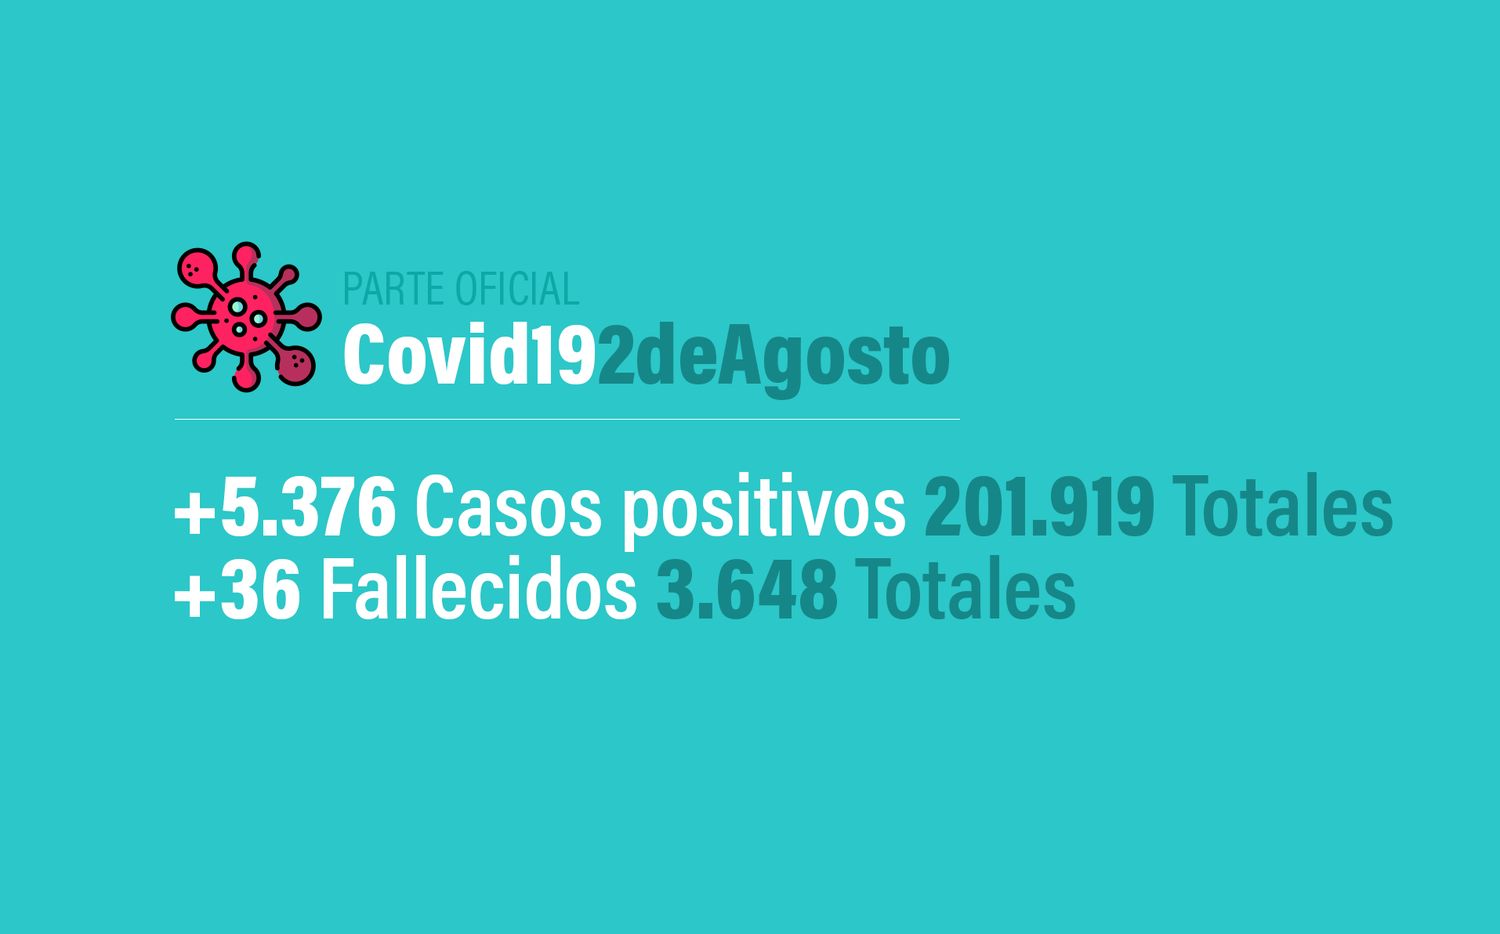 Coronavirus en Argentina: 5376 nuevos casos, 201 919 confirmados, 89 026 recuperados y 3648 muertes, al 2 de agosto